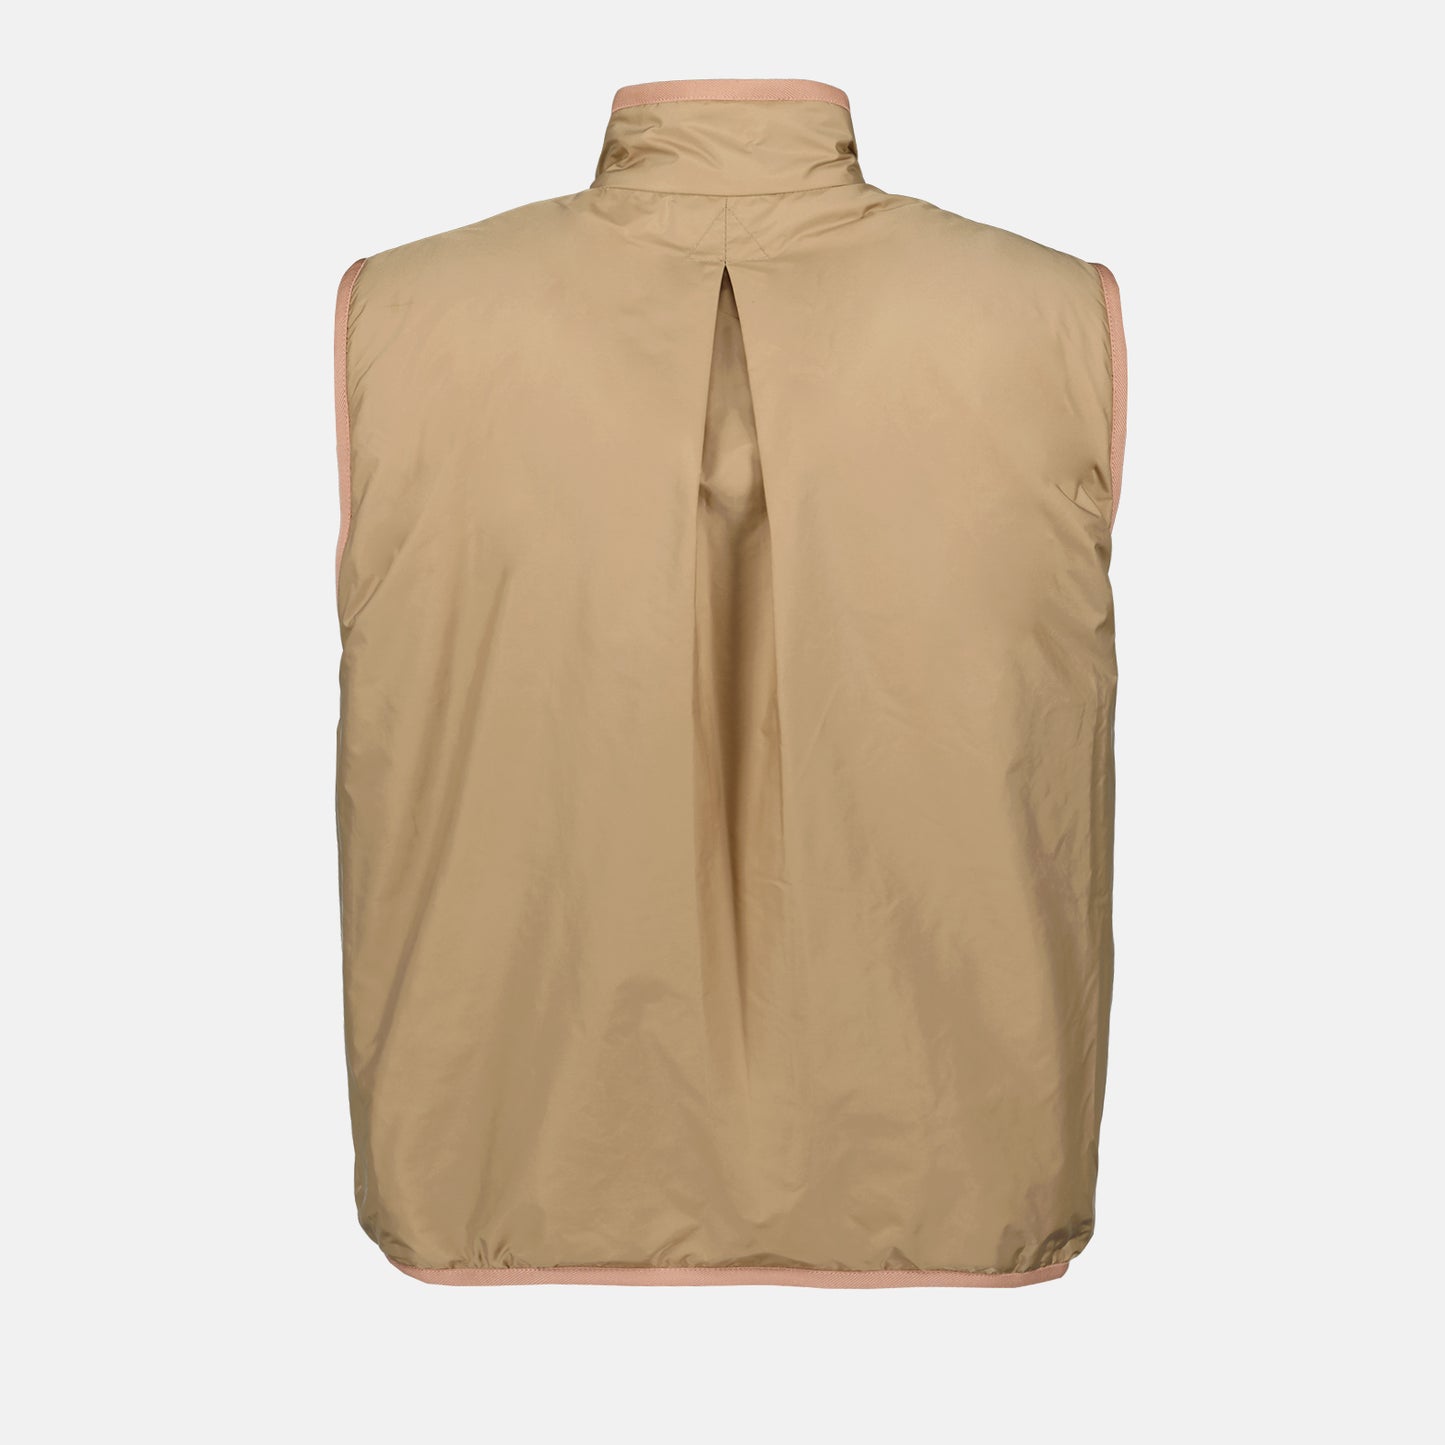 Reversible sleeveless jacket